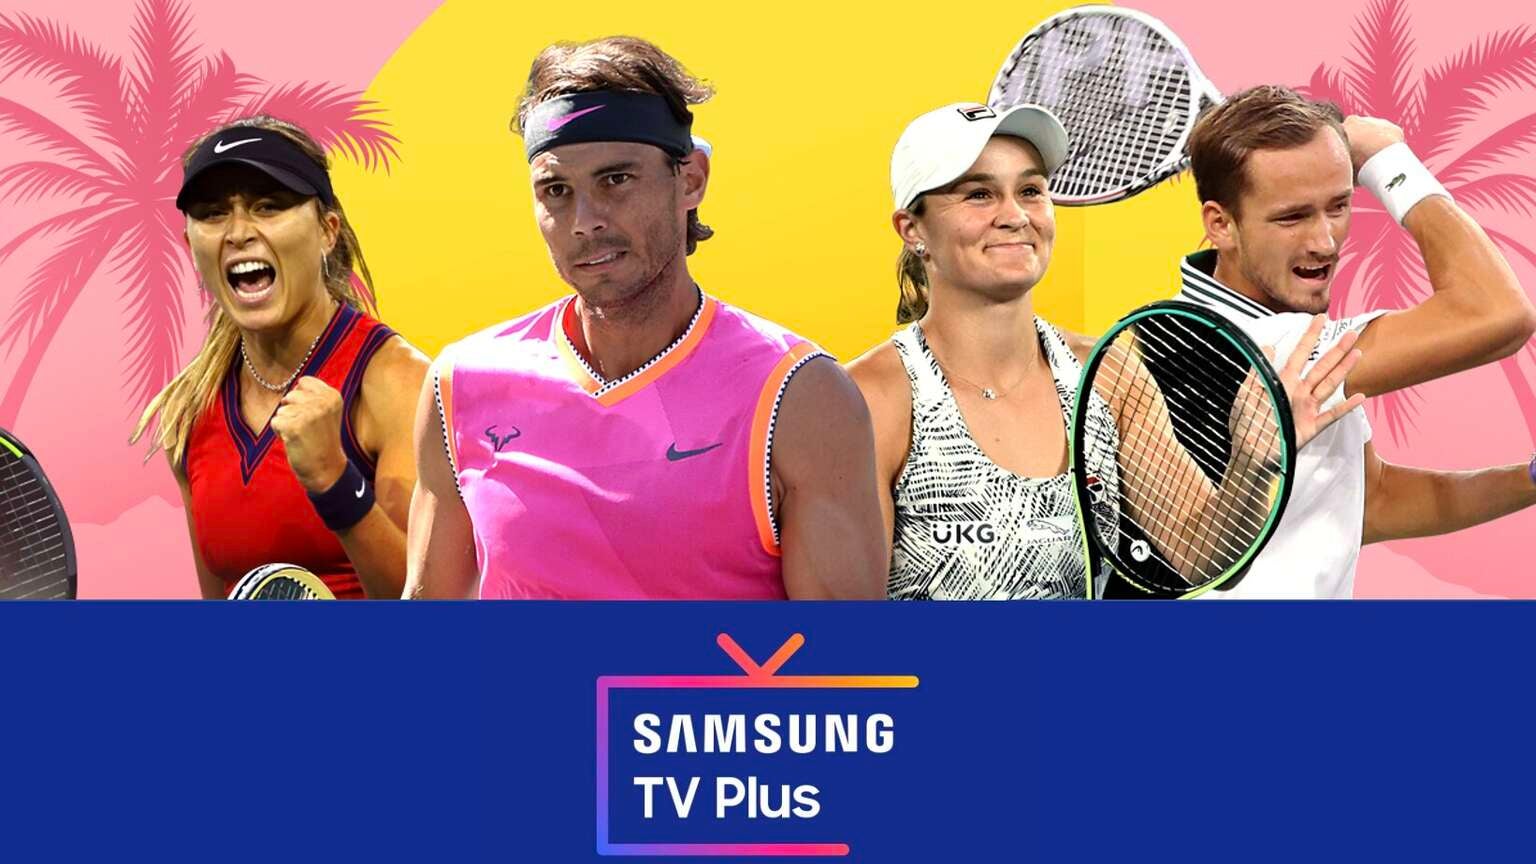 samsung tv plus tennis channel